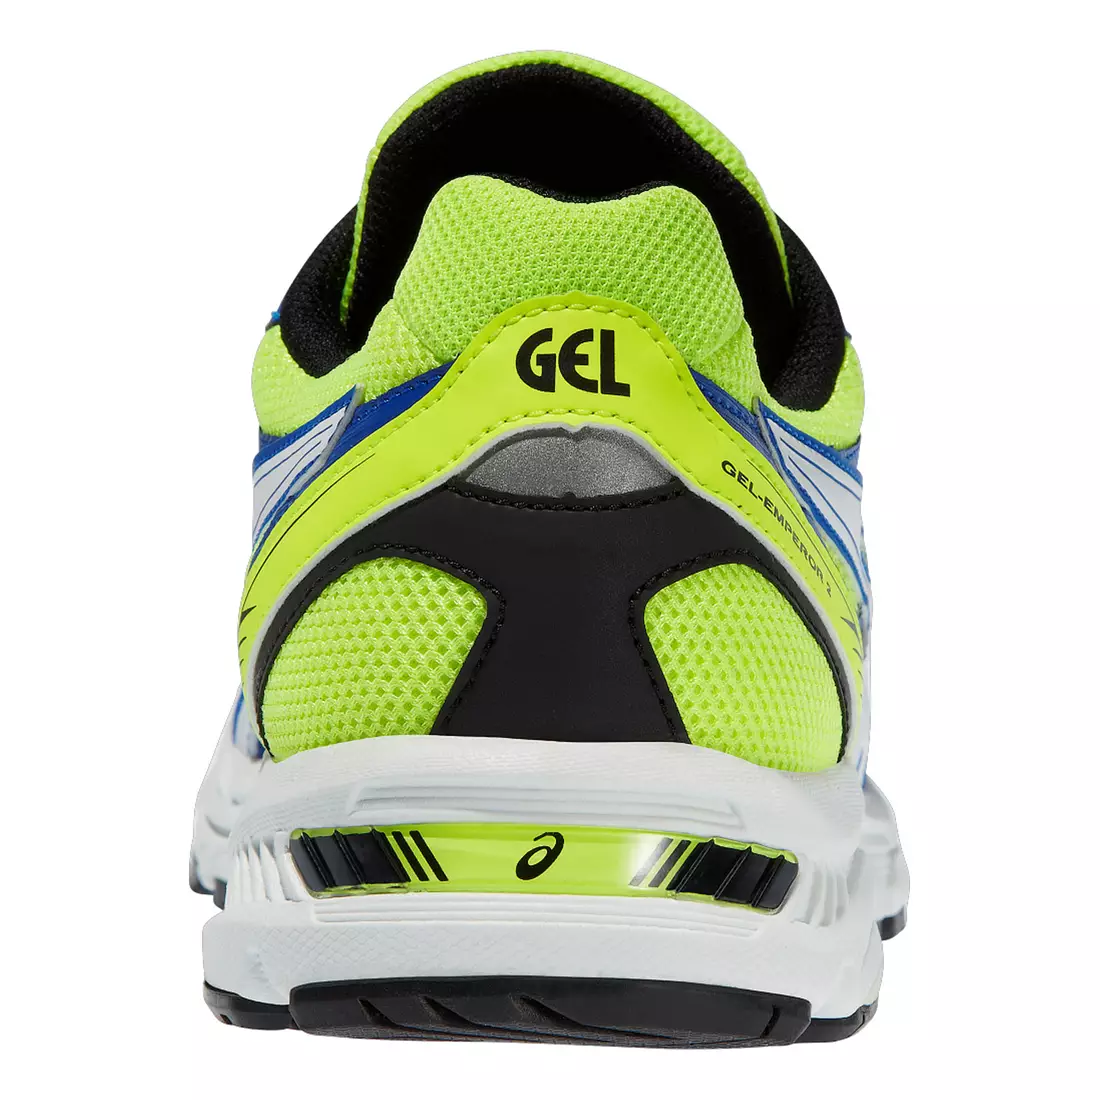 ASICS GEL-EMPEROR 2 running shoes 4201